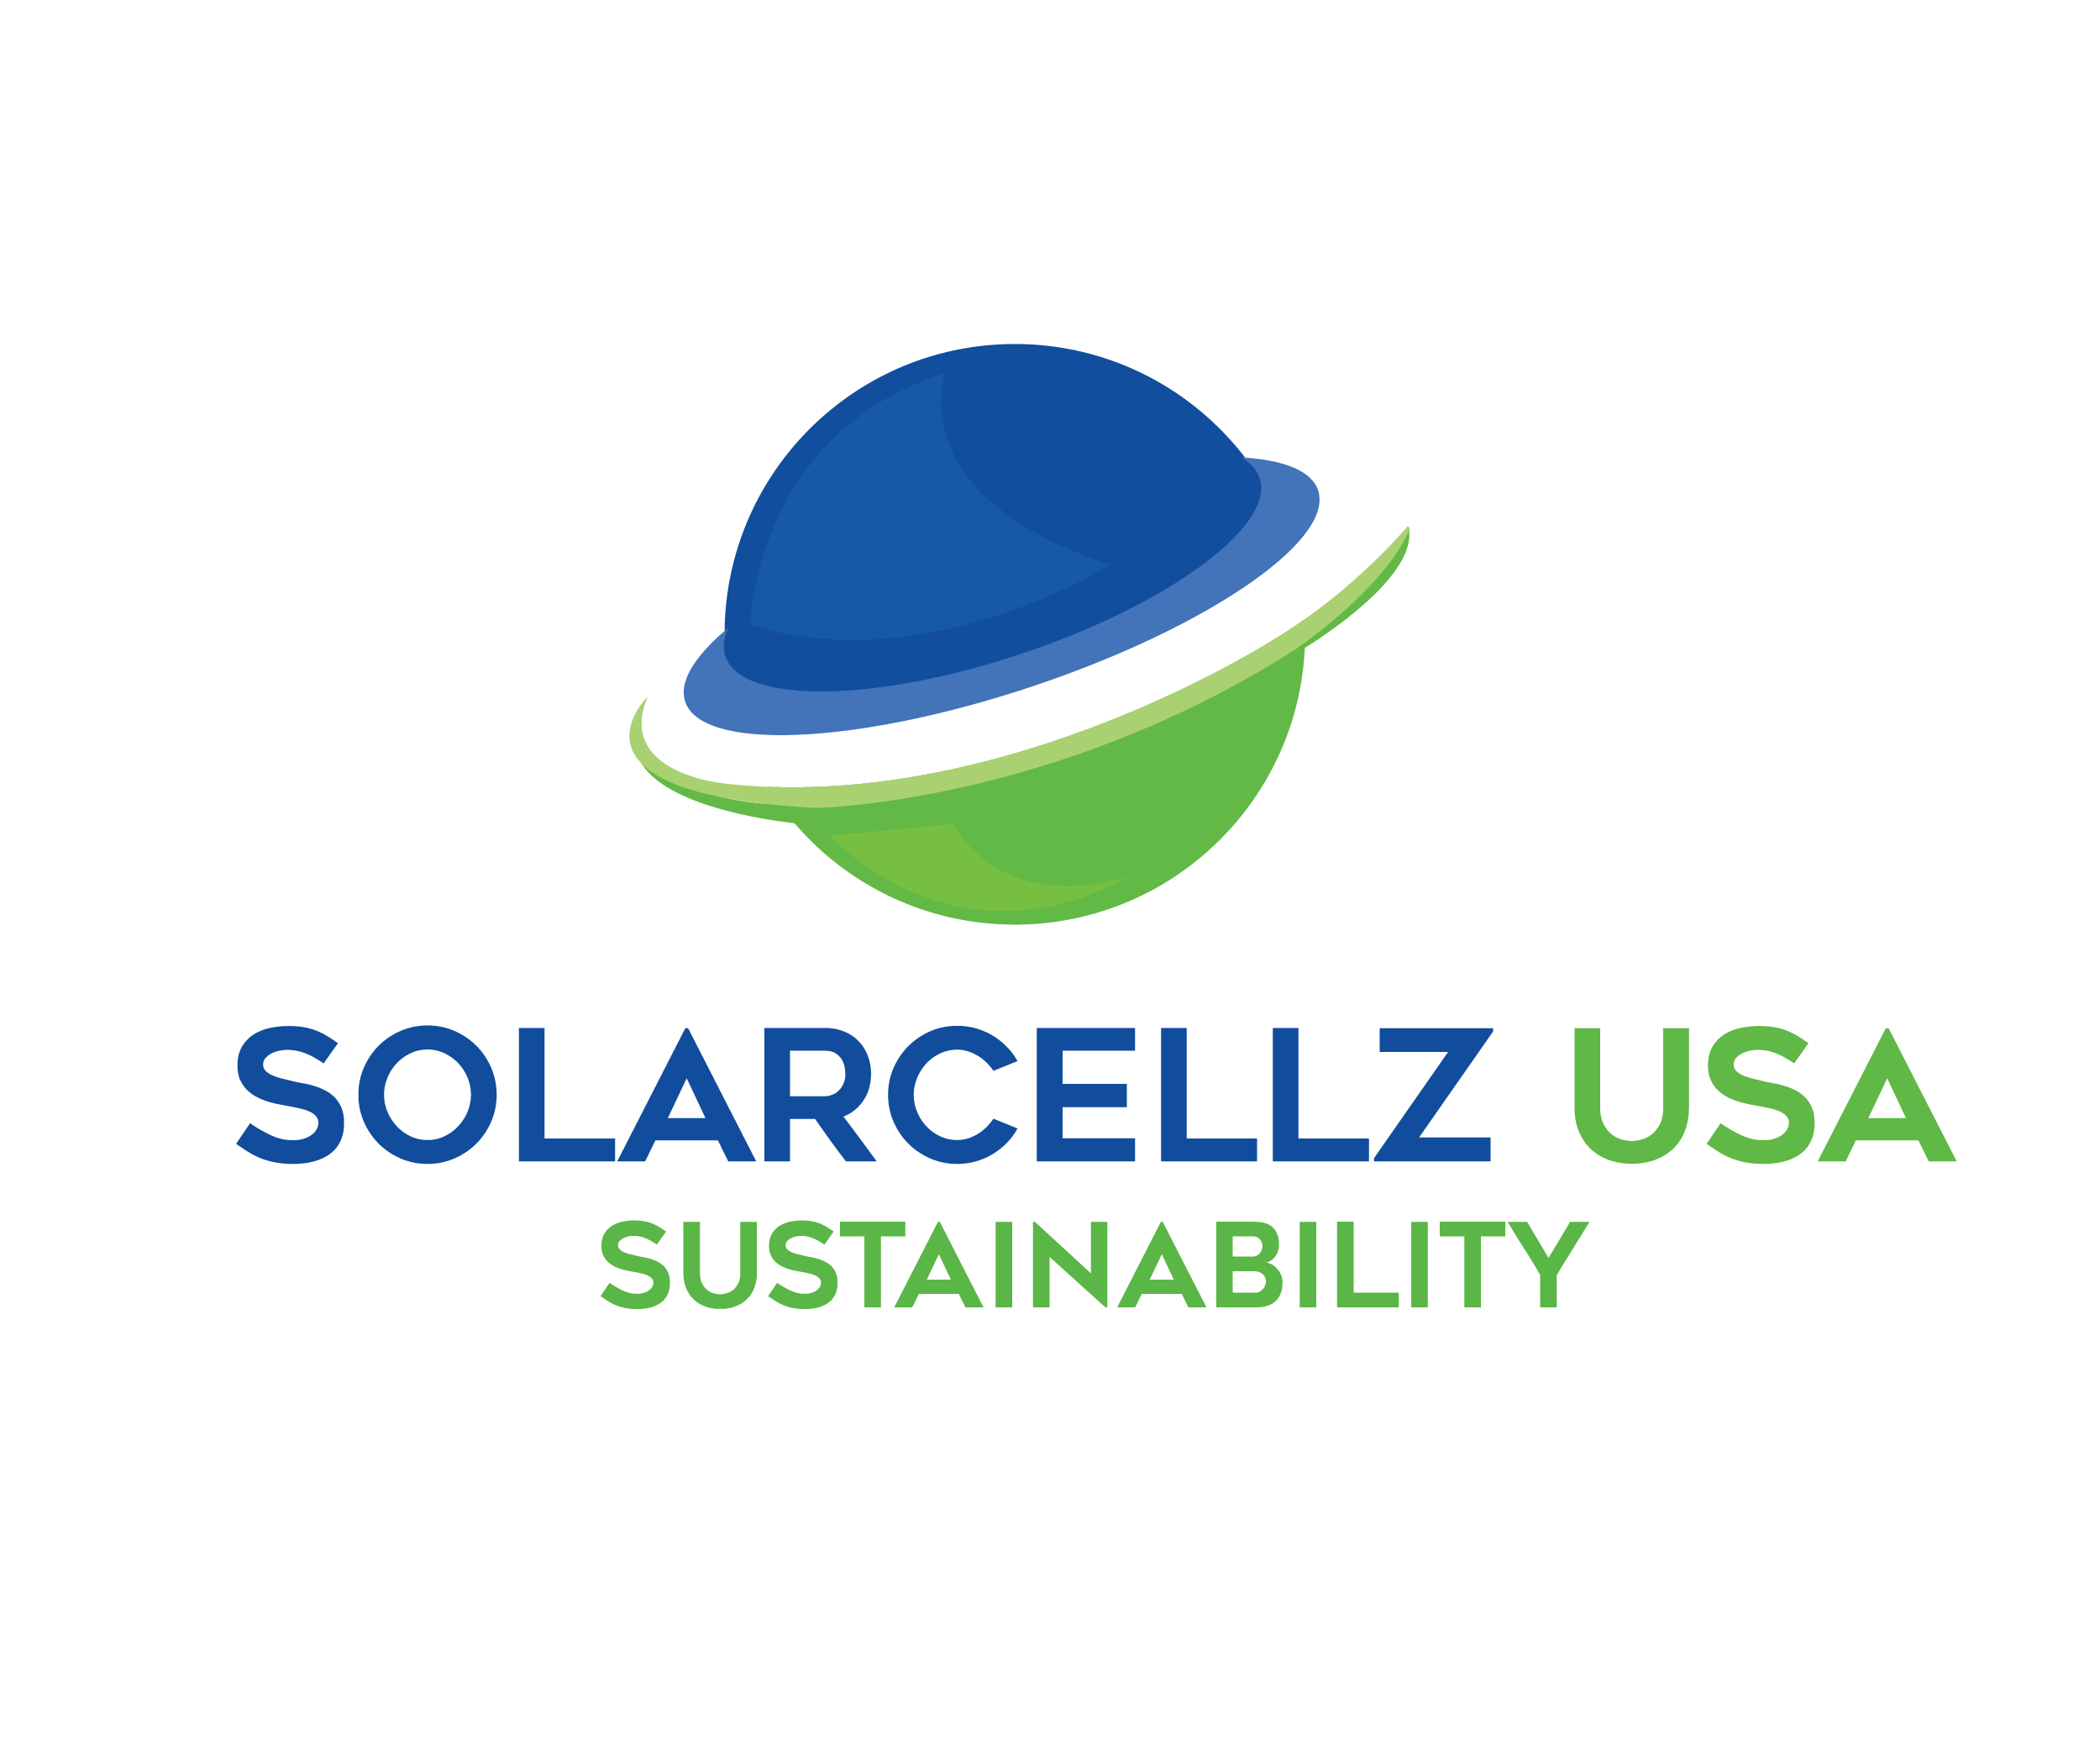 Solar Cellz USA's logo